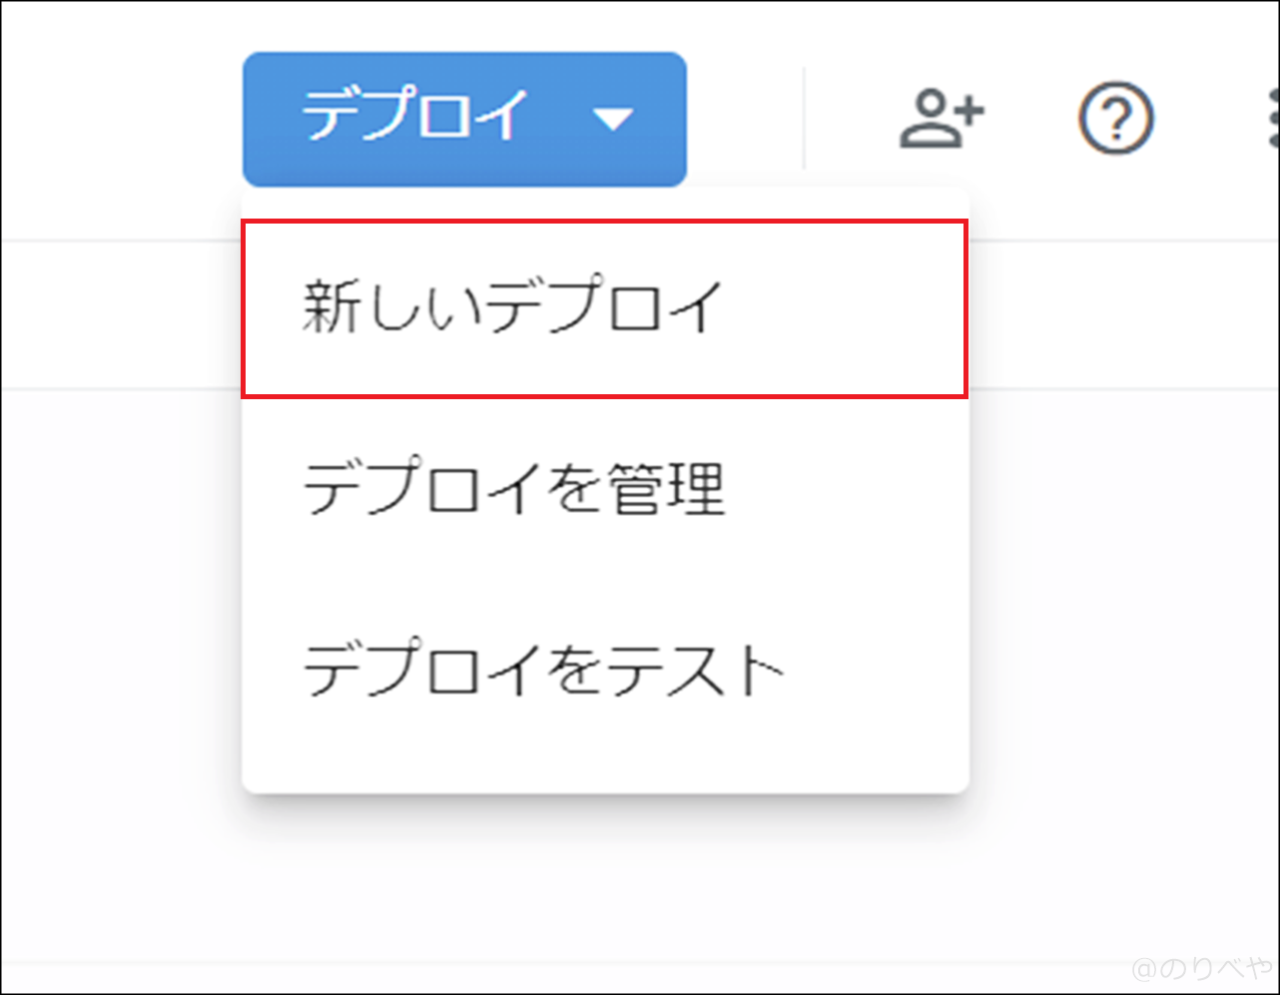 生放送で英語字幕をリアルタイム表示させるために「google翻訳のkeyを取得し設定」をする 【OBS配信で外国語を自動で表示させる設定方法】